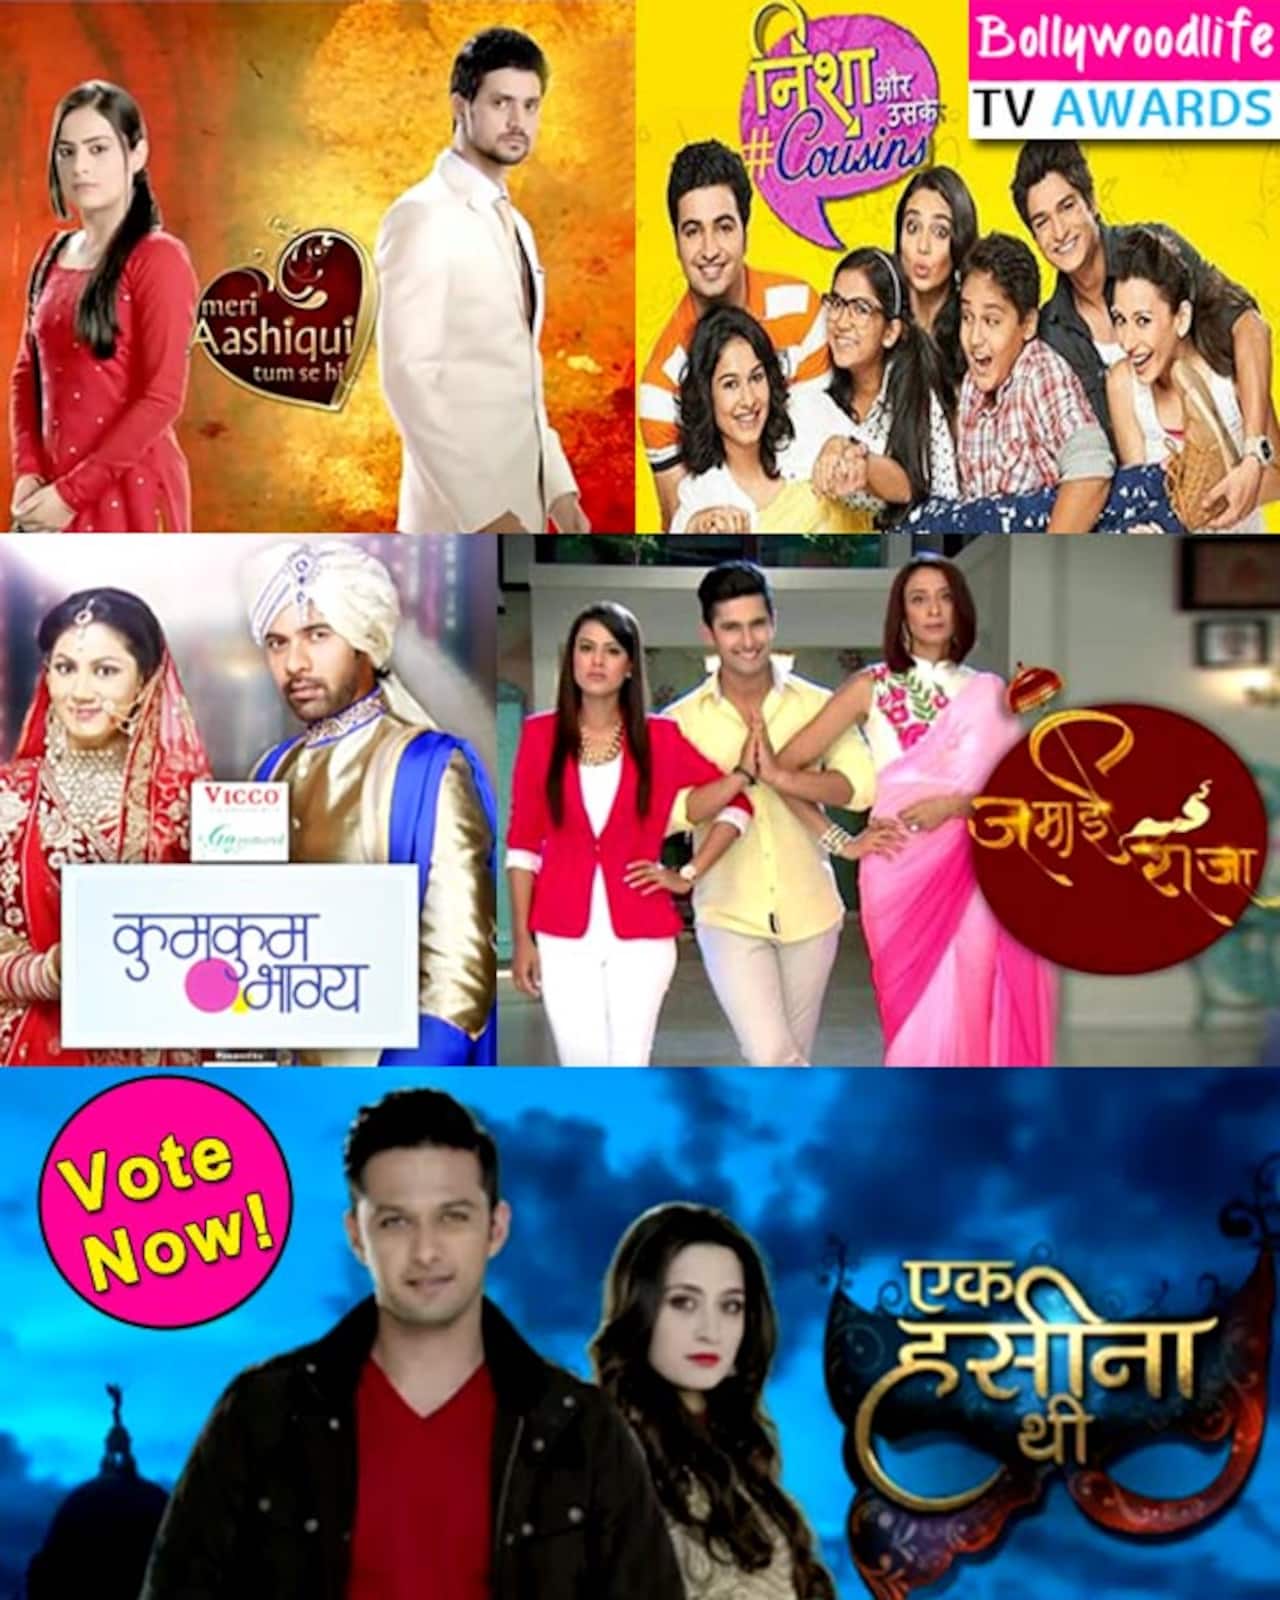 BollywoodLife TV Awards 2015: Kumkum Bhagya, Nisha Aur Uske Cousins, Ek Hasina Thi – which is your favourite new show?